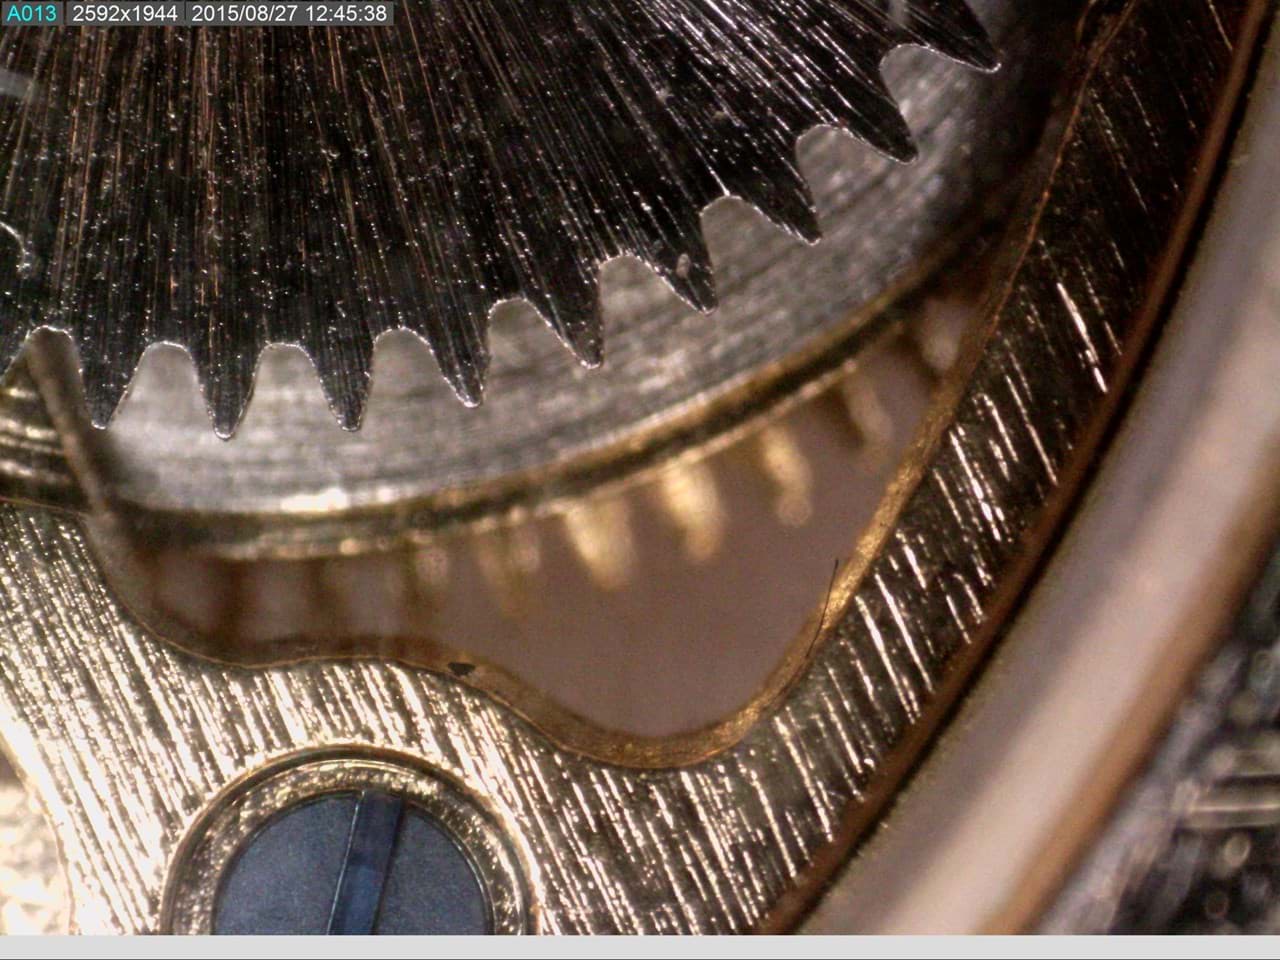 Zahnrad unter dem Mikroskop. Wahrscheinlich das Innere einer Armbanduhr. Ein Beispiel was man mit einem Dino-Lite Mikroskop machen kann.